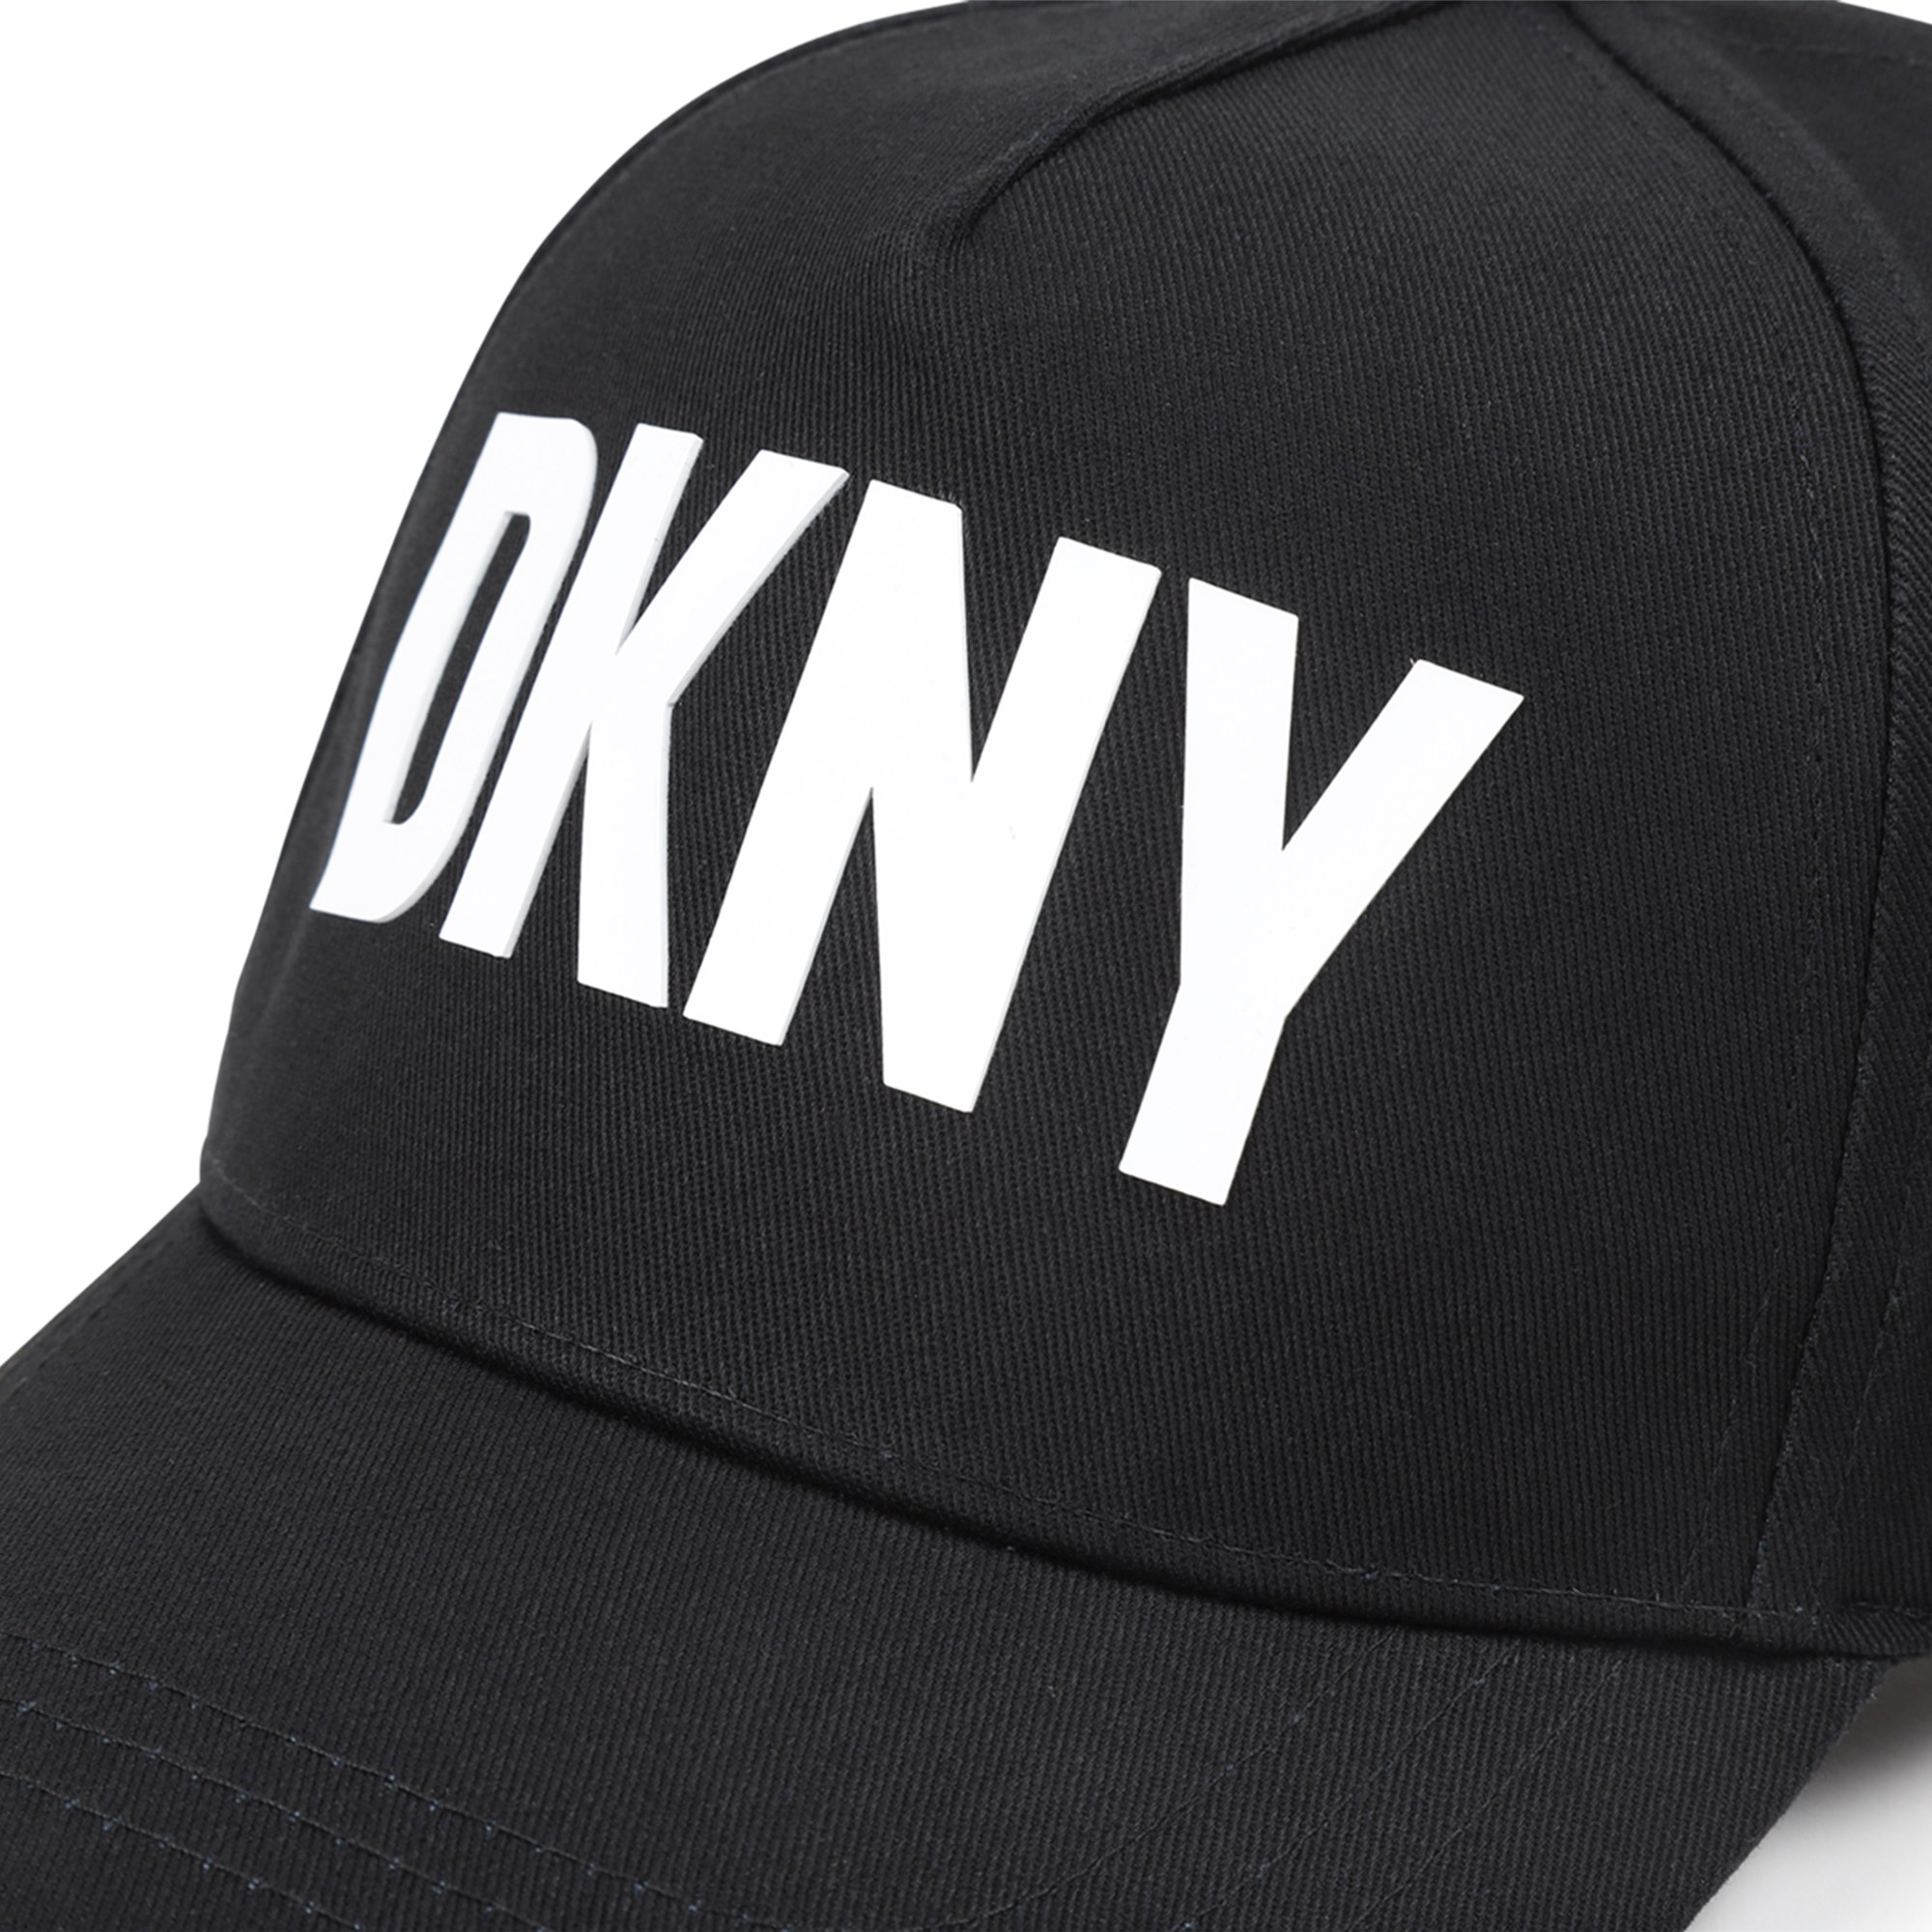 Pet met logo DKNY Voor